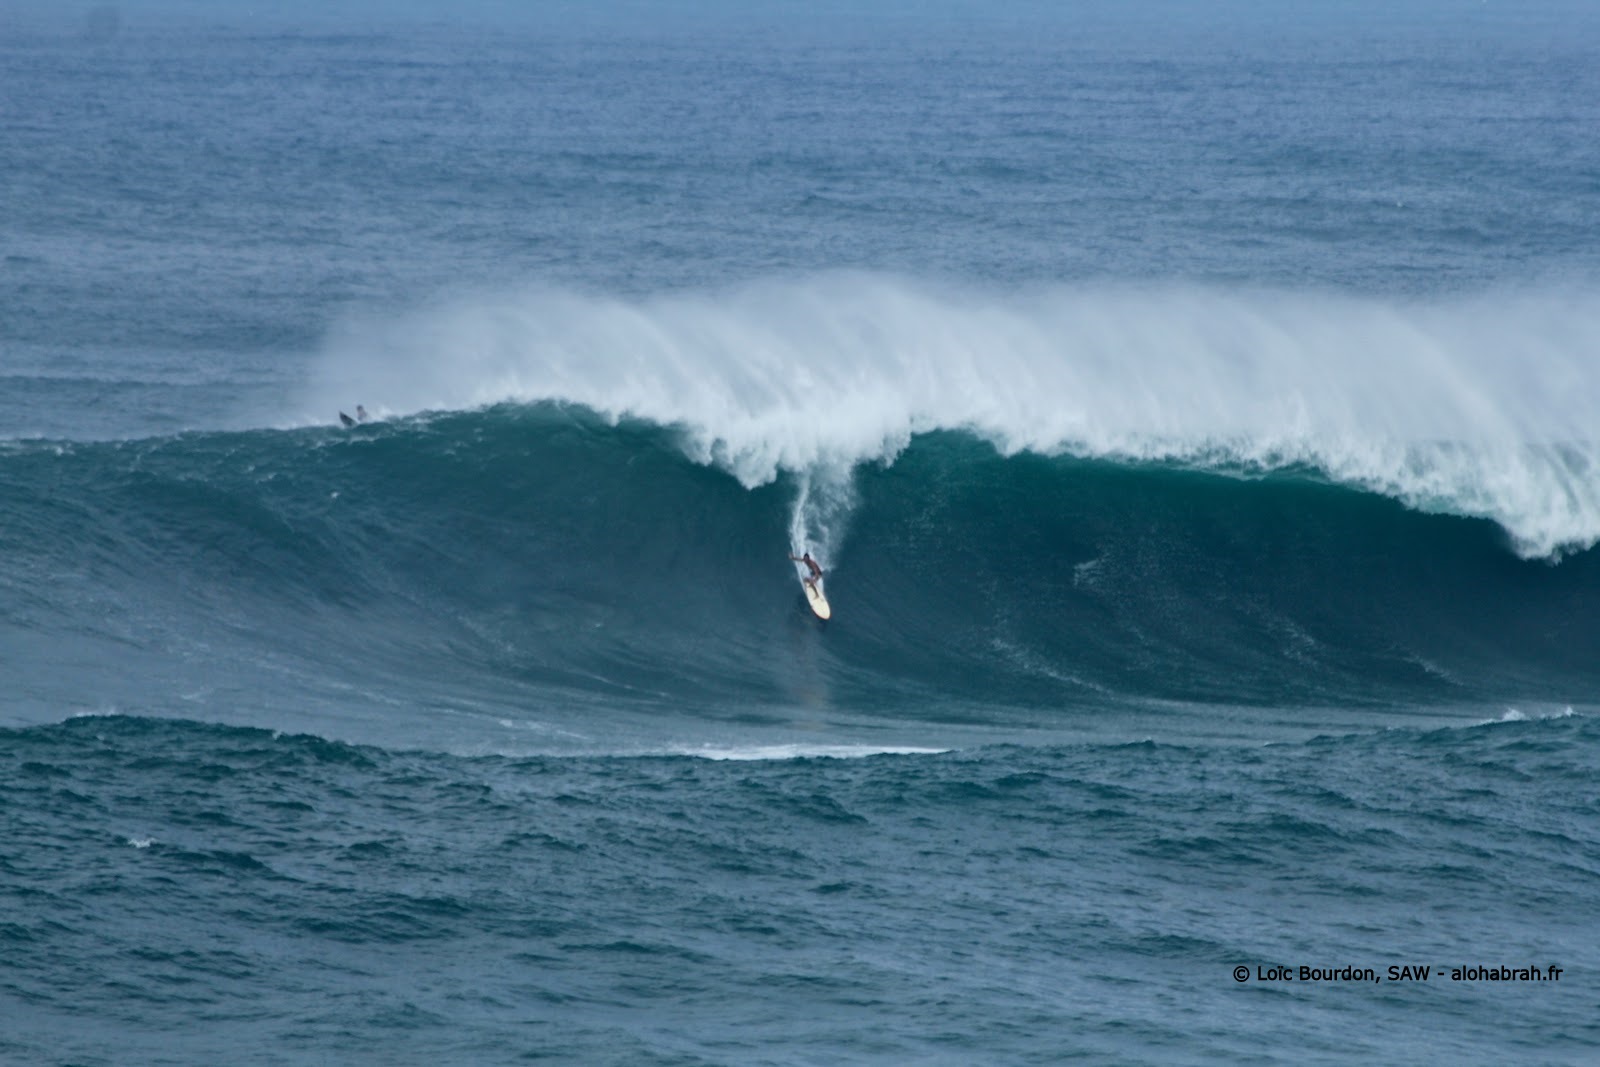 Concours de celui ou celle qui donnera la taille exacte de cette vague - waimea swell du 04-01-12 © Loïc Bourdon, SAW - alohabrah.fr